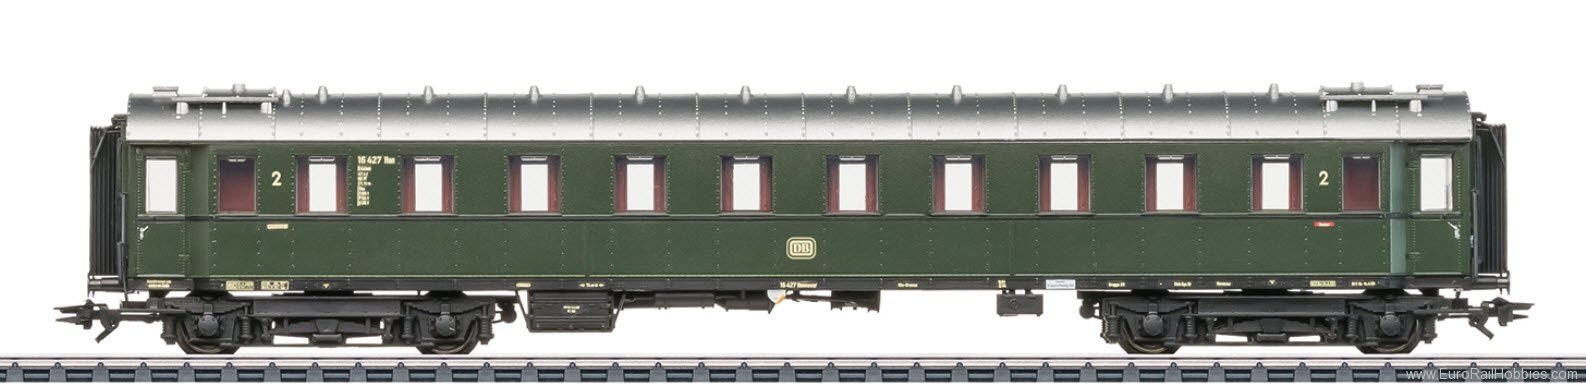 Marklin 42520 DB 2nd Class Type B4Ã¼-28 Passenger Coach